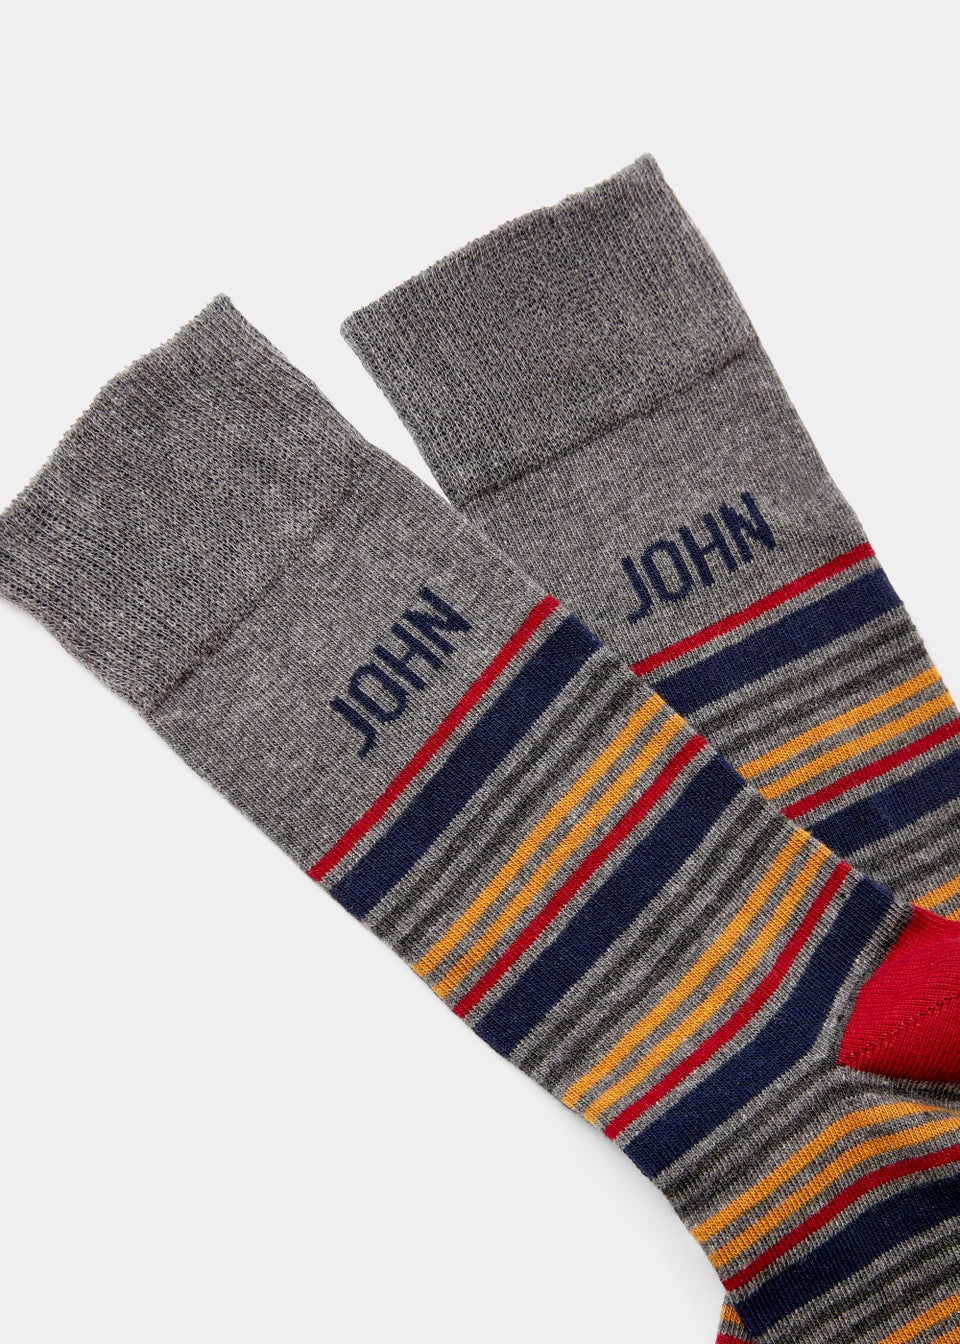 Multicoloured John Name Socks